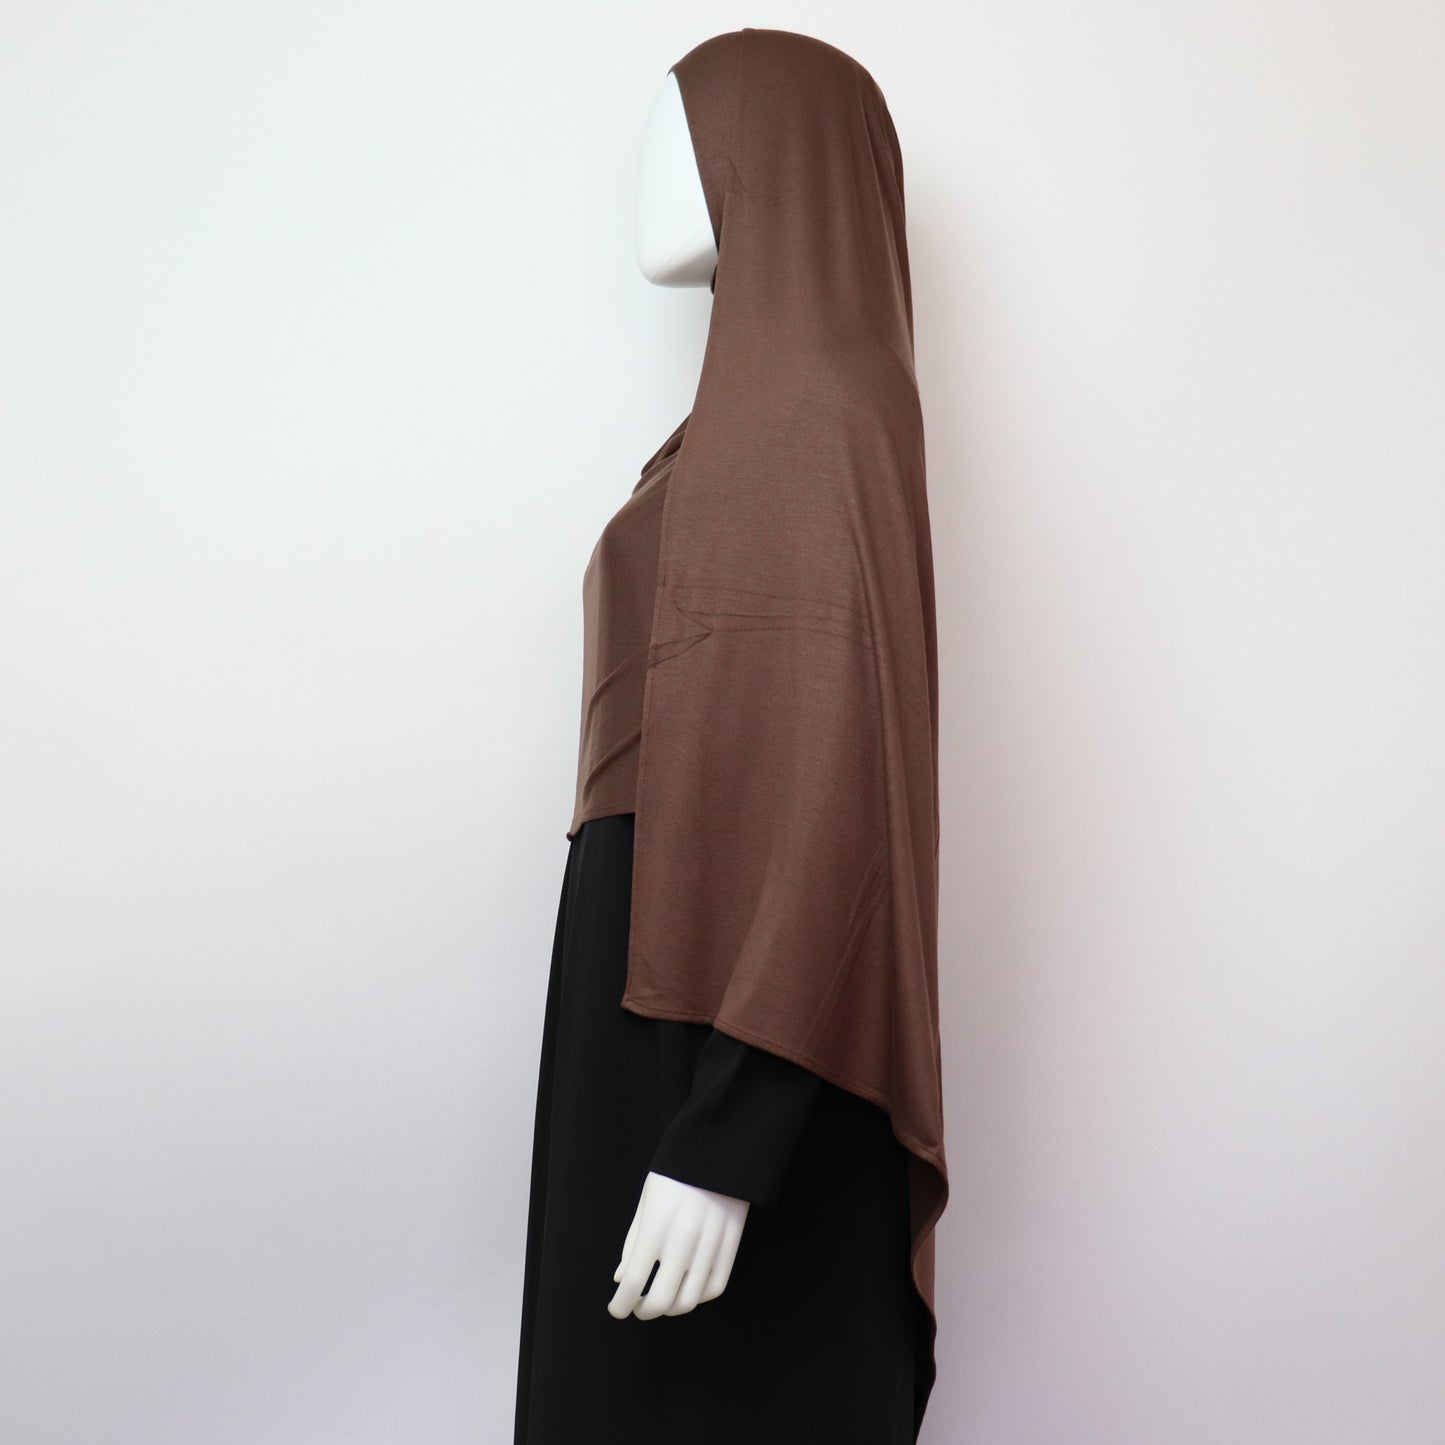 Premium Maxi Jersey Hijab Choco Brown